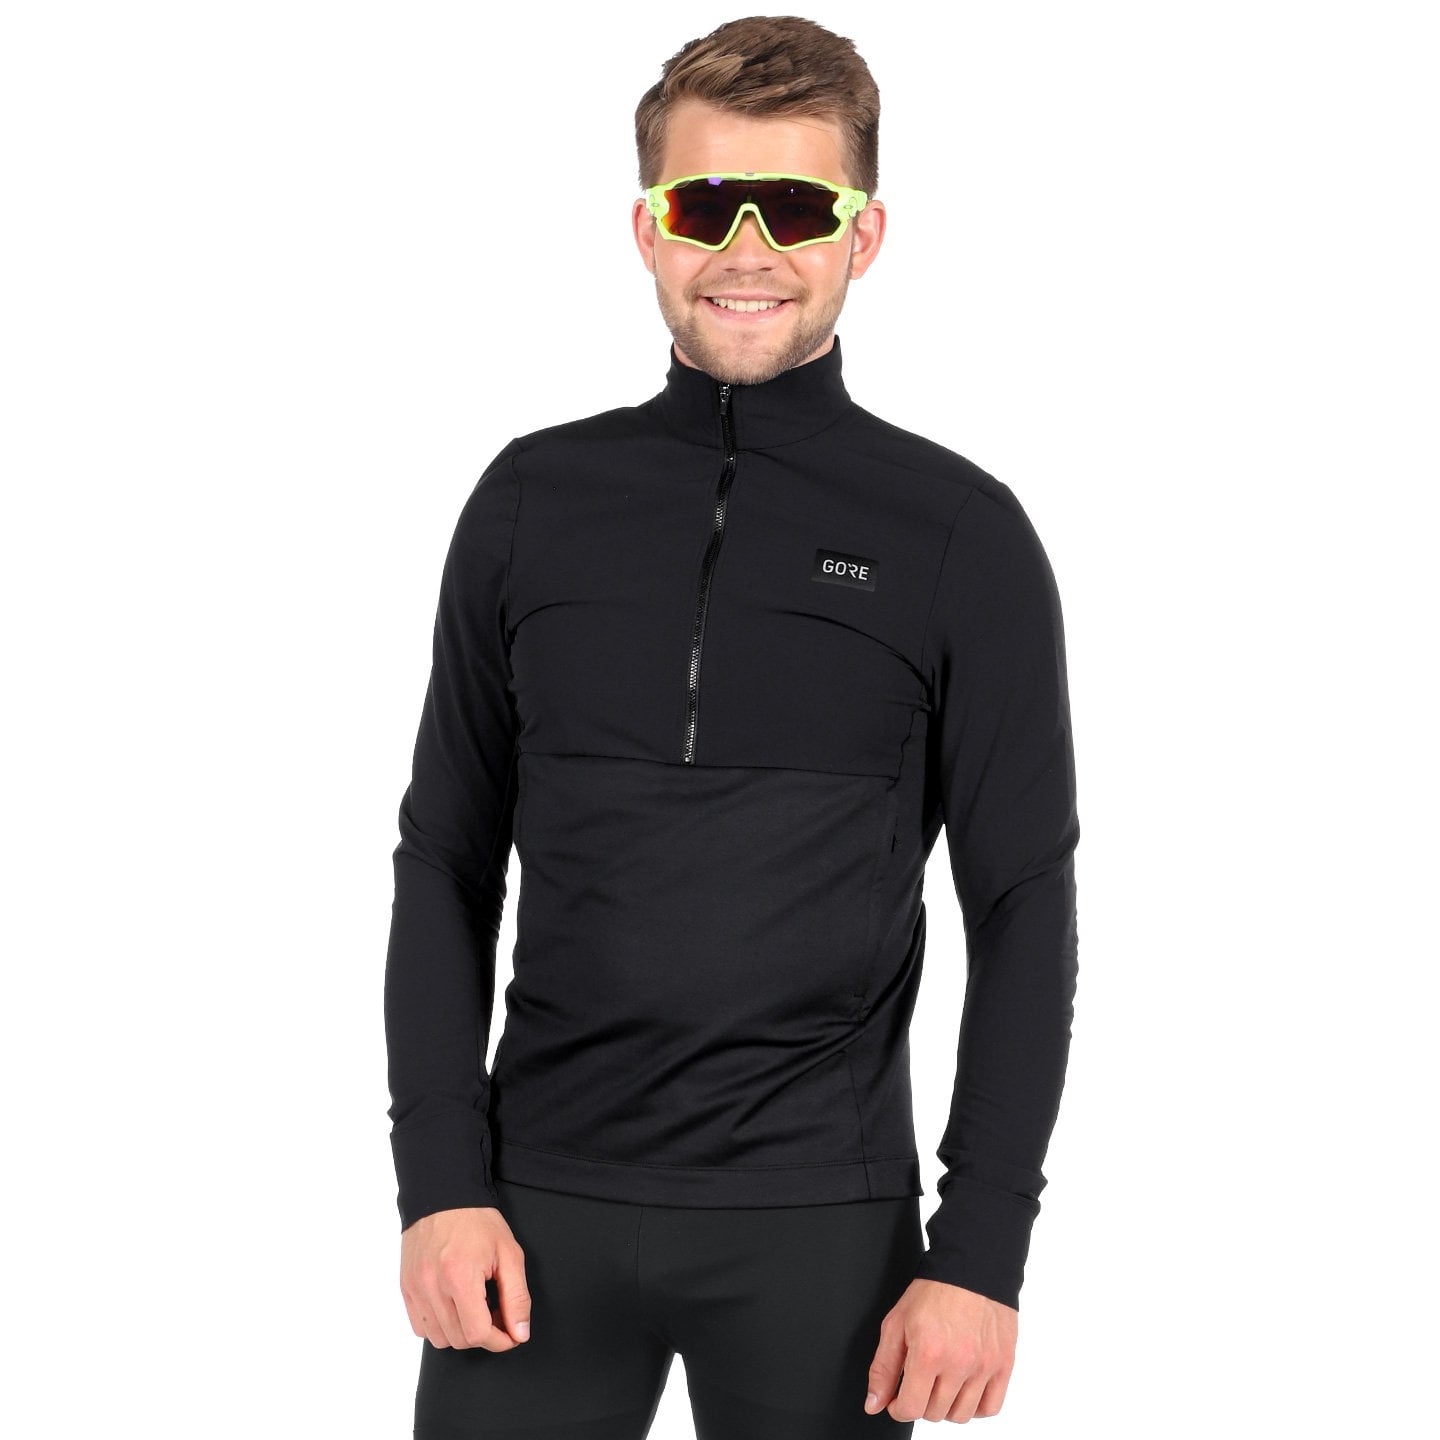 GORE WEAR TrailKPR Hybrid Long Sleeve Jersey Long Sleeve Jersey, for men, size XL, Cycling jersey, Cycle clothing